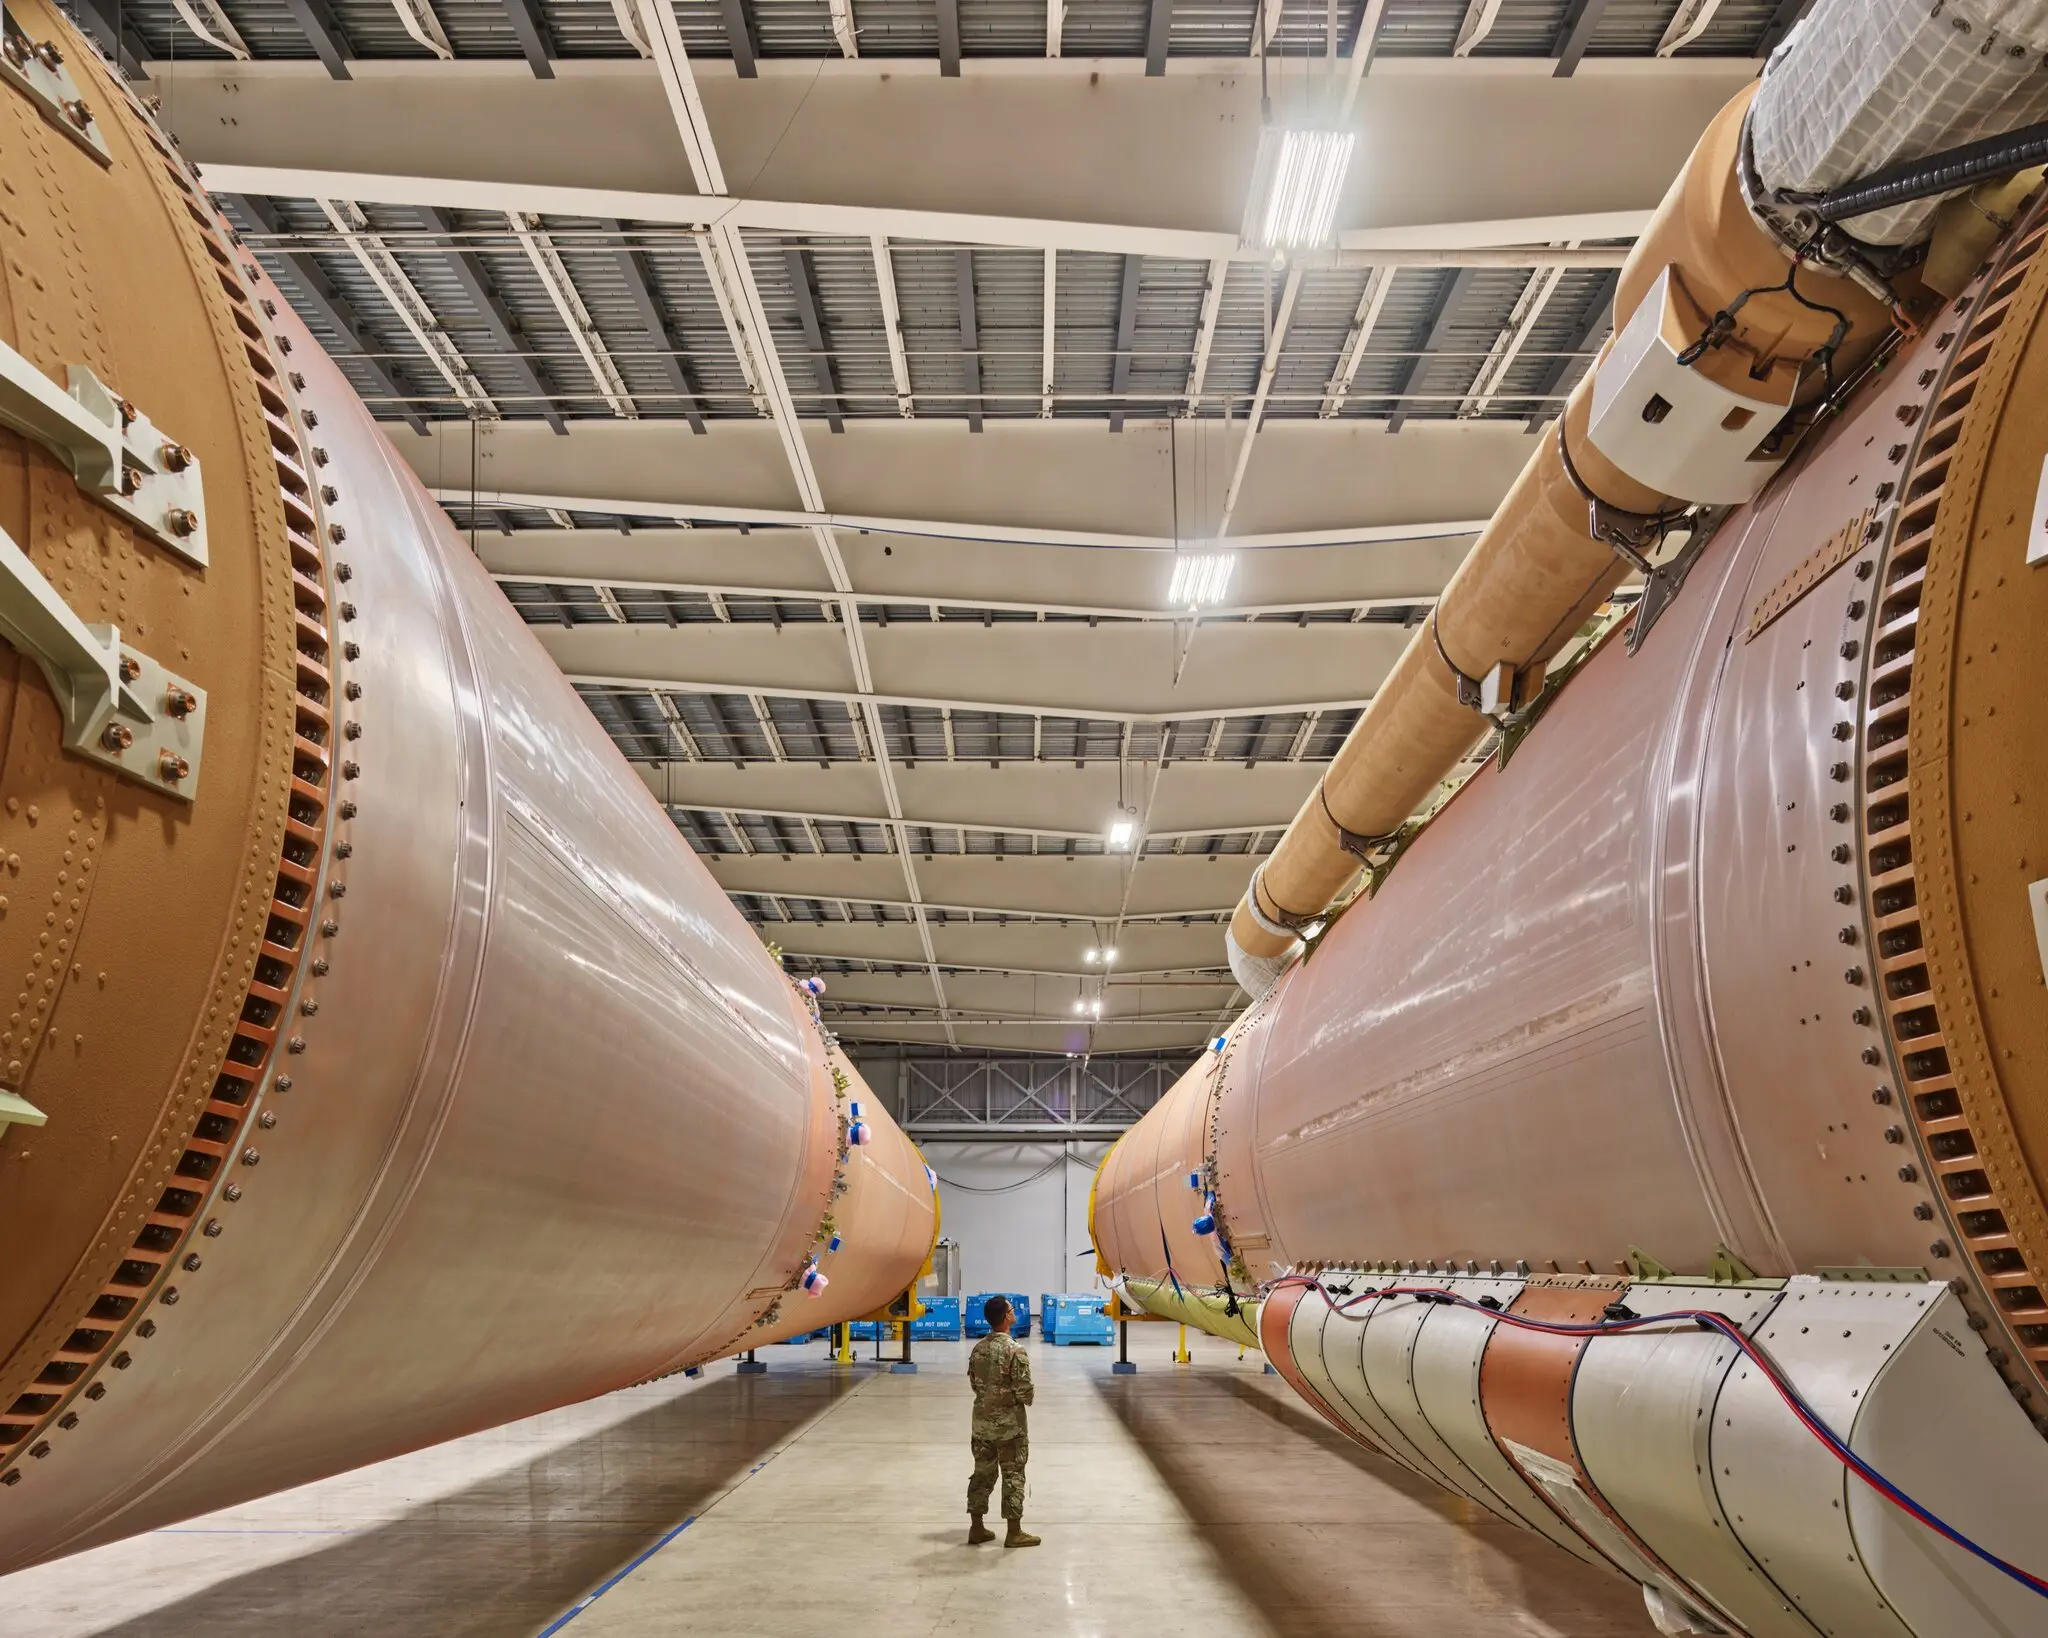 Ракеты-носители Atlas V, изготовленные United Launch Alliance (партнерство Lockheed Martin и Boeing), которые будут запускать будущие правительственные миссии на мысе Канаверал. Credit: Christopher Payne for The New York Times